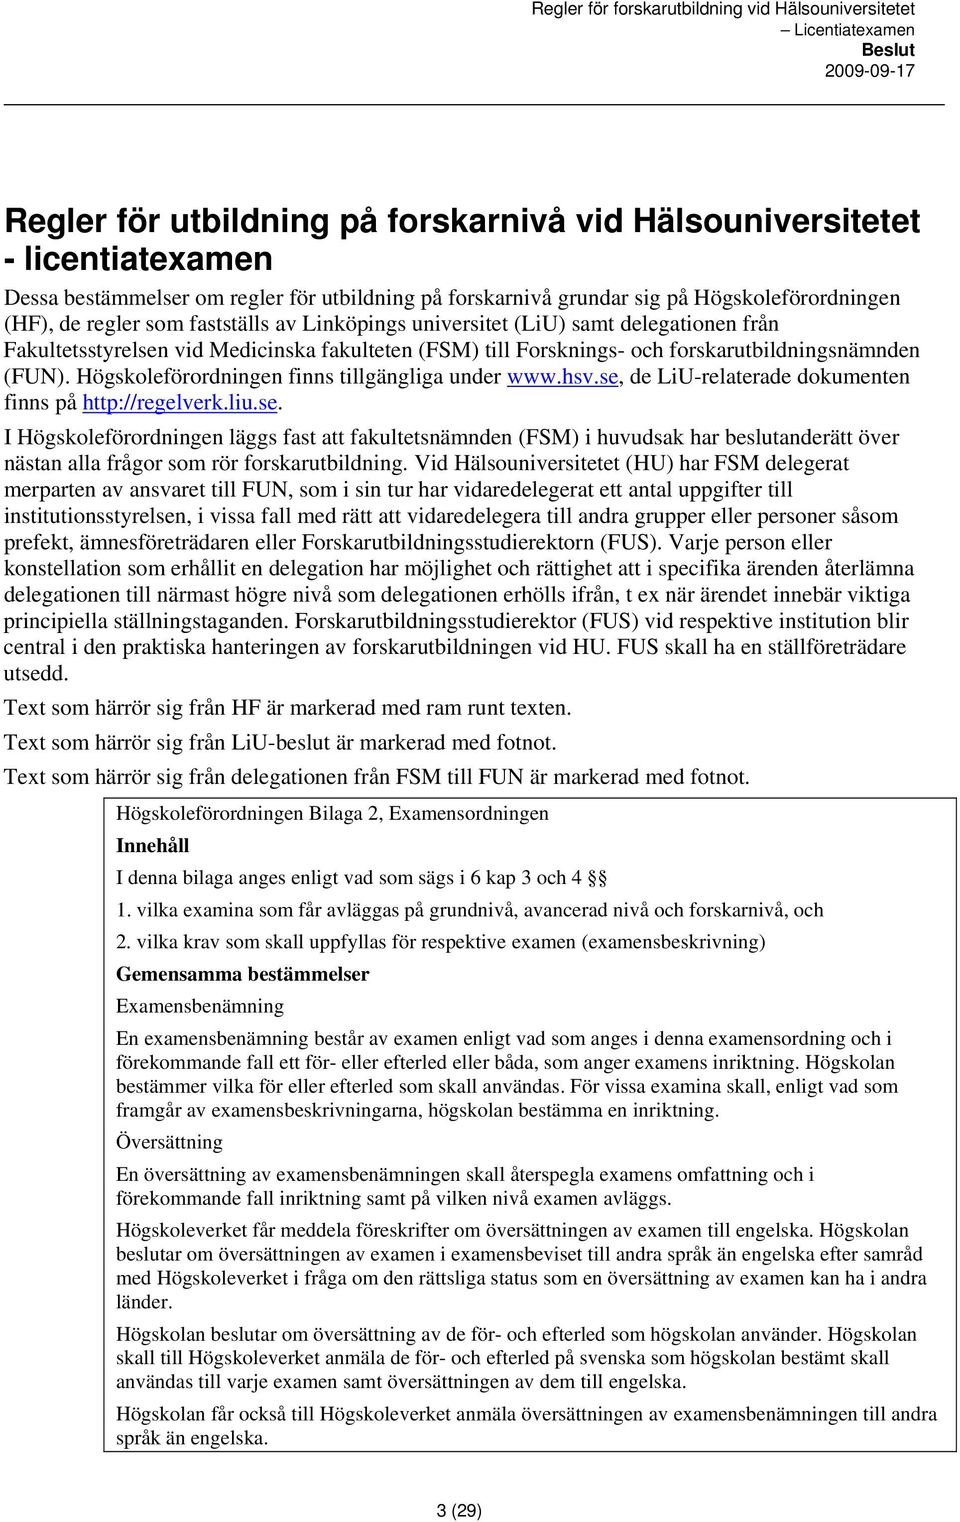 Högskoleförordningen finns tillgängliga under www.hsv.se, de LiU-relaterade dokumenten finns på http://regelverk.liu.se. I Högskoleförordningen läggs fast att fakultetsnämnden (FSM) i huvudsak har beslutanderätt över nästan alla frågor som rör forskarutbildning.